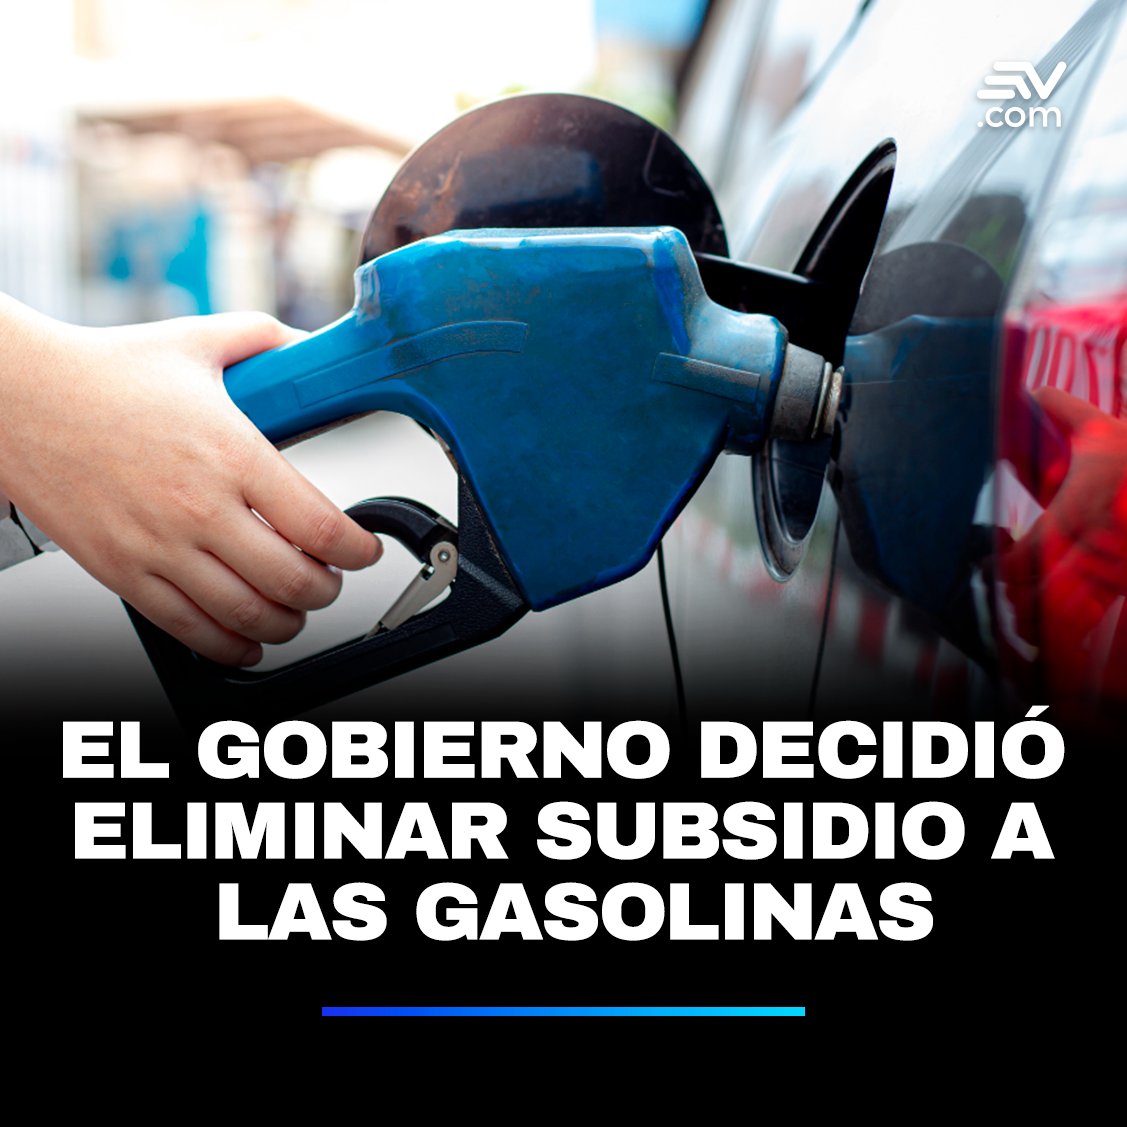 ⛽ El Gobierno de Daniel Noboa quitará el subsidio al precio de las gasolinas Extra y Ecopaís. Así intentará ahorrar alrededor de USD 600 millones al año. Mire el reportaje completo ▶️ bit.ly/4c3e3xo